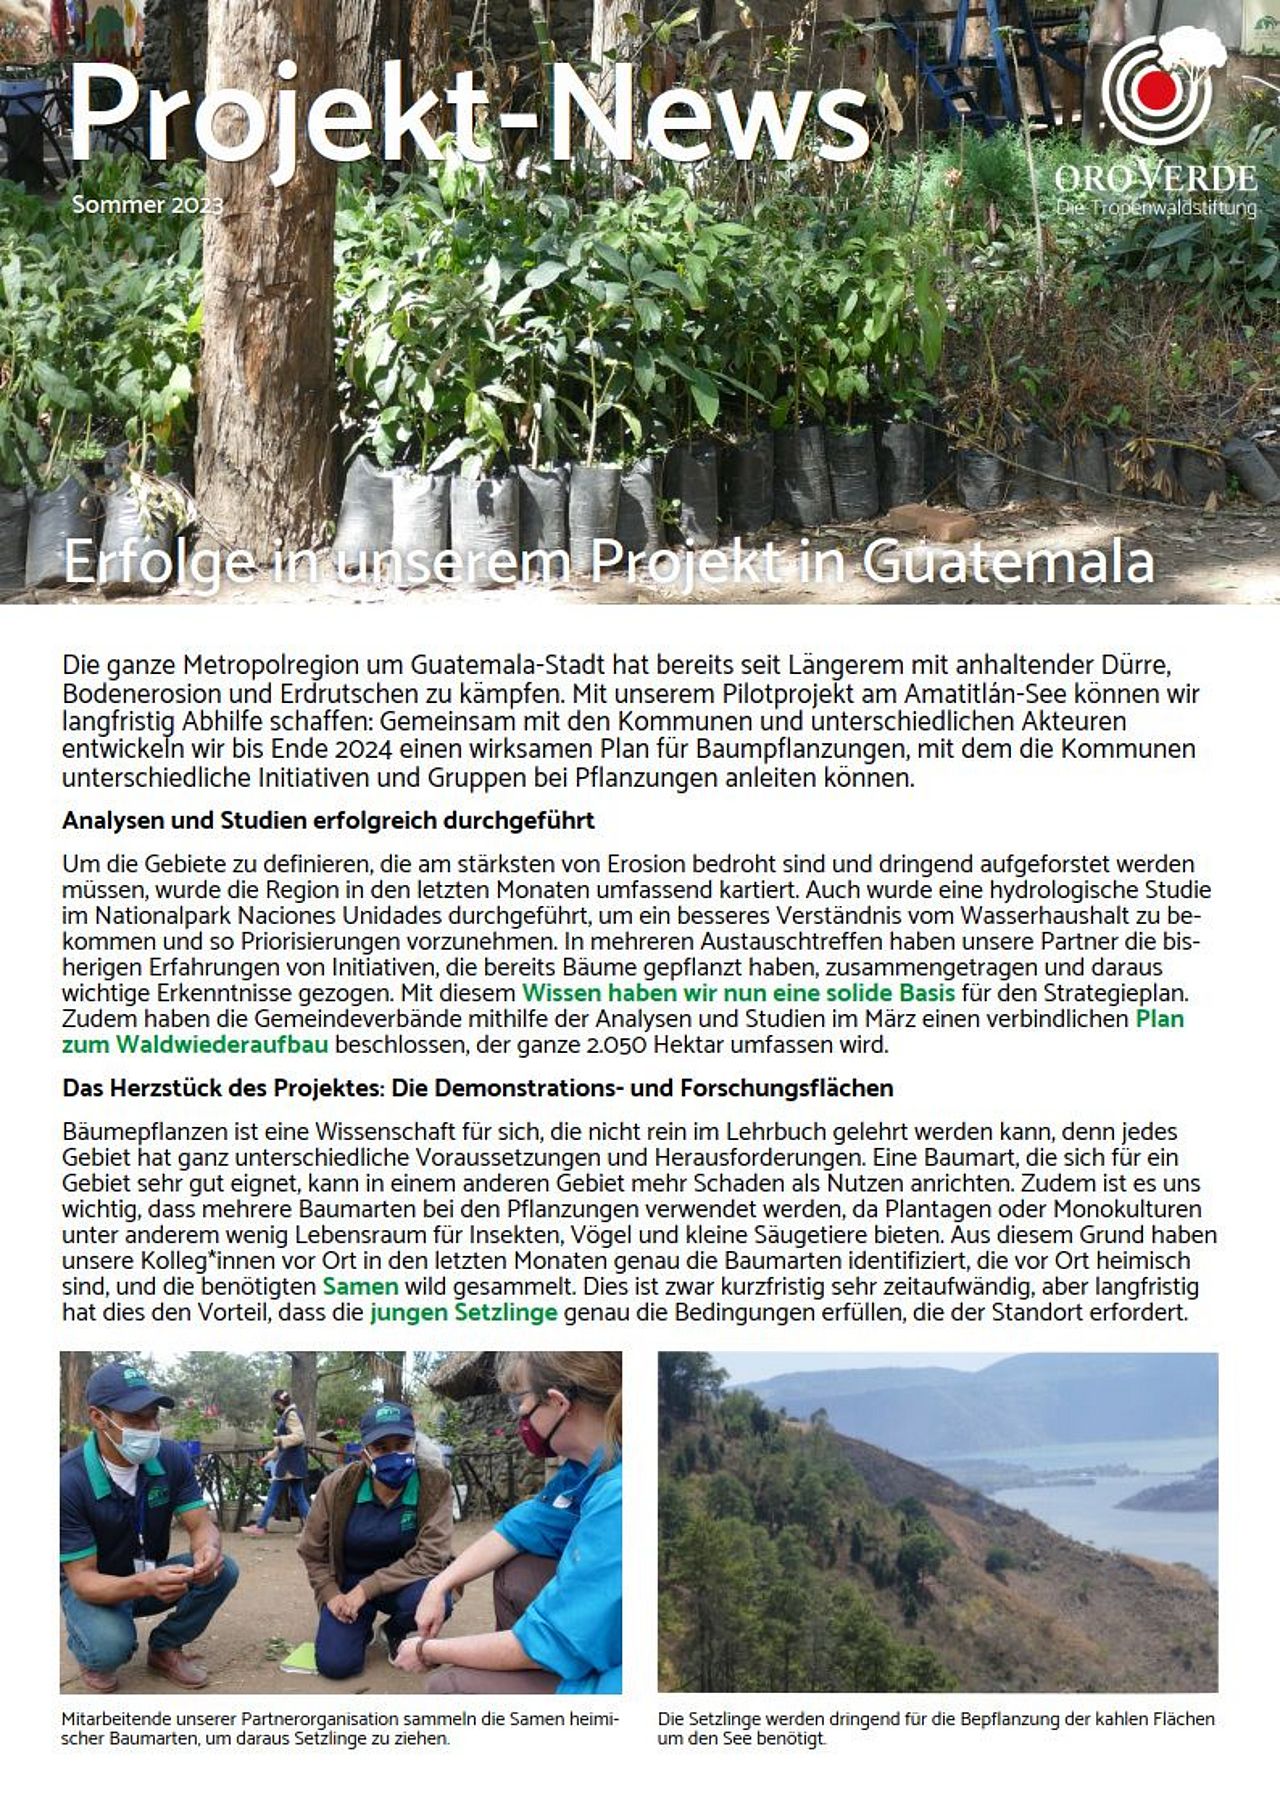 Fortschrittsbericht Guatemala Amatitlán-See 2023